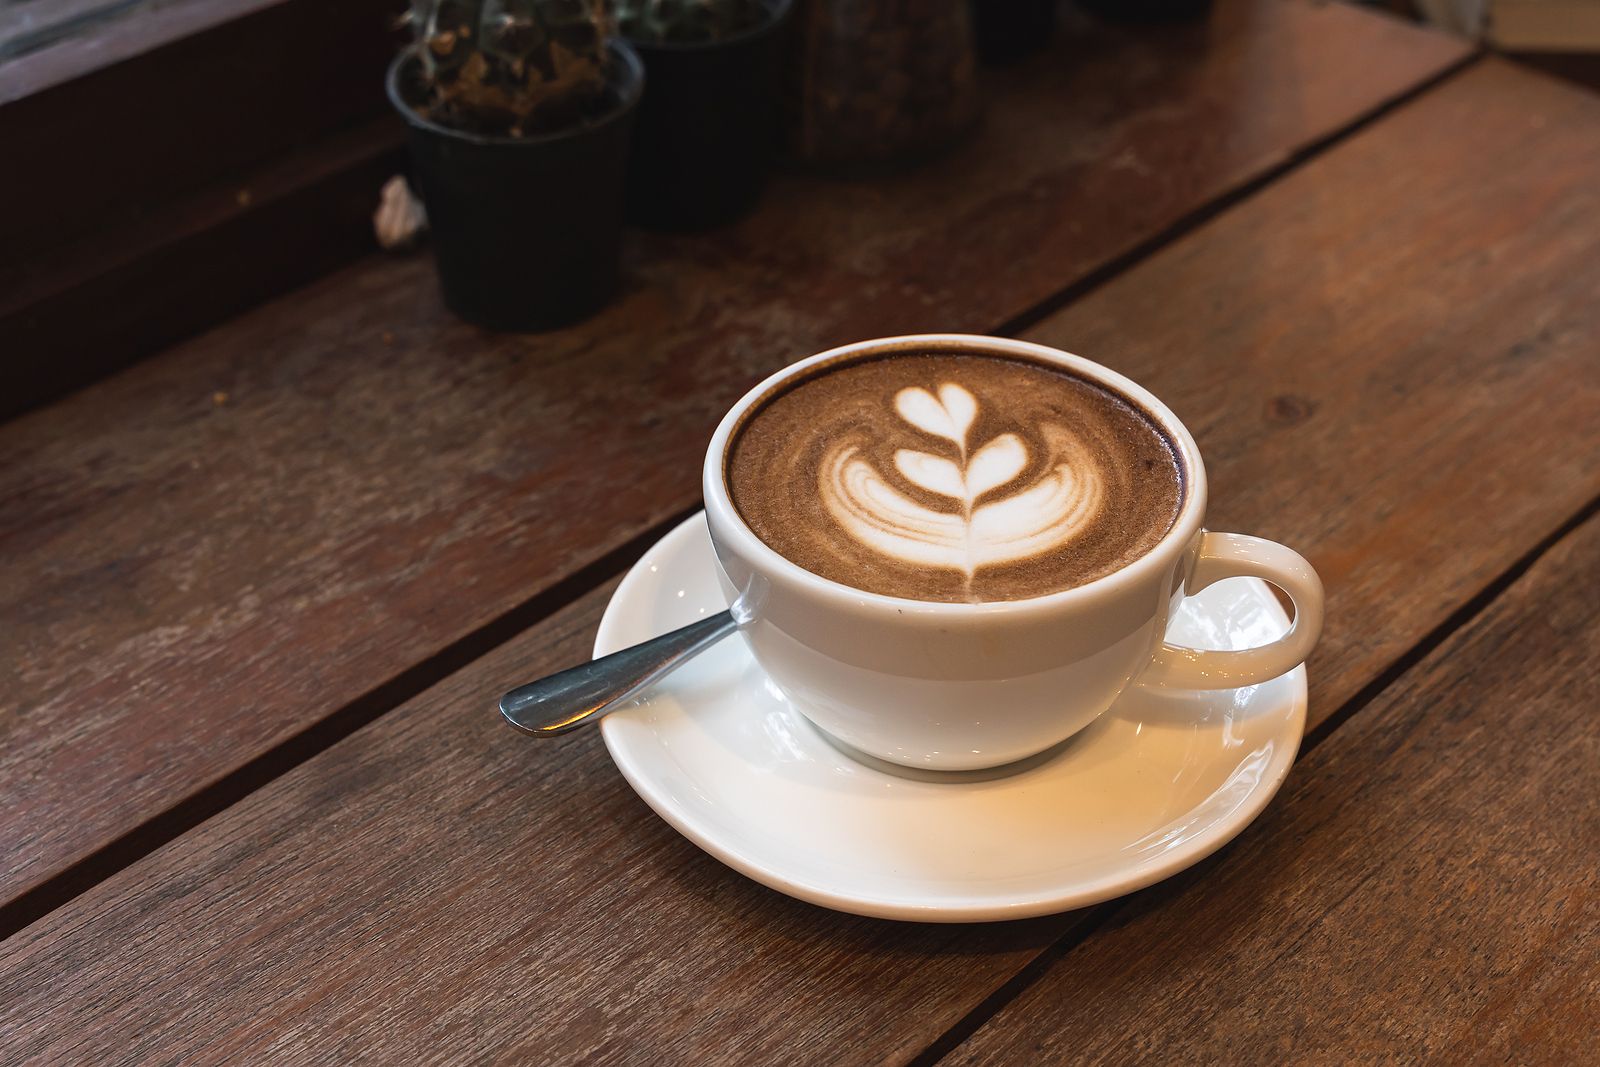 Los peligros del enema de café: "Puede causar perforaciones de colon con peritonitis"